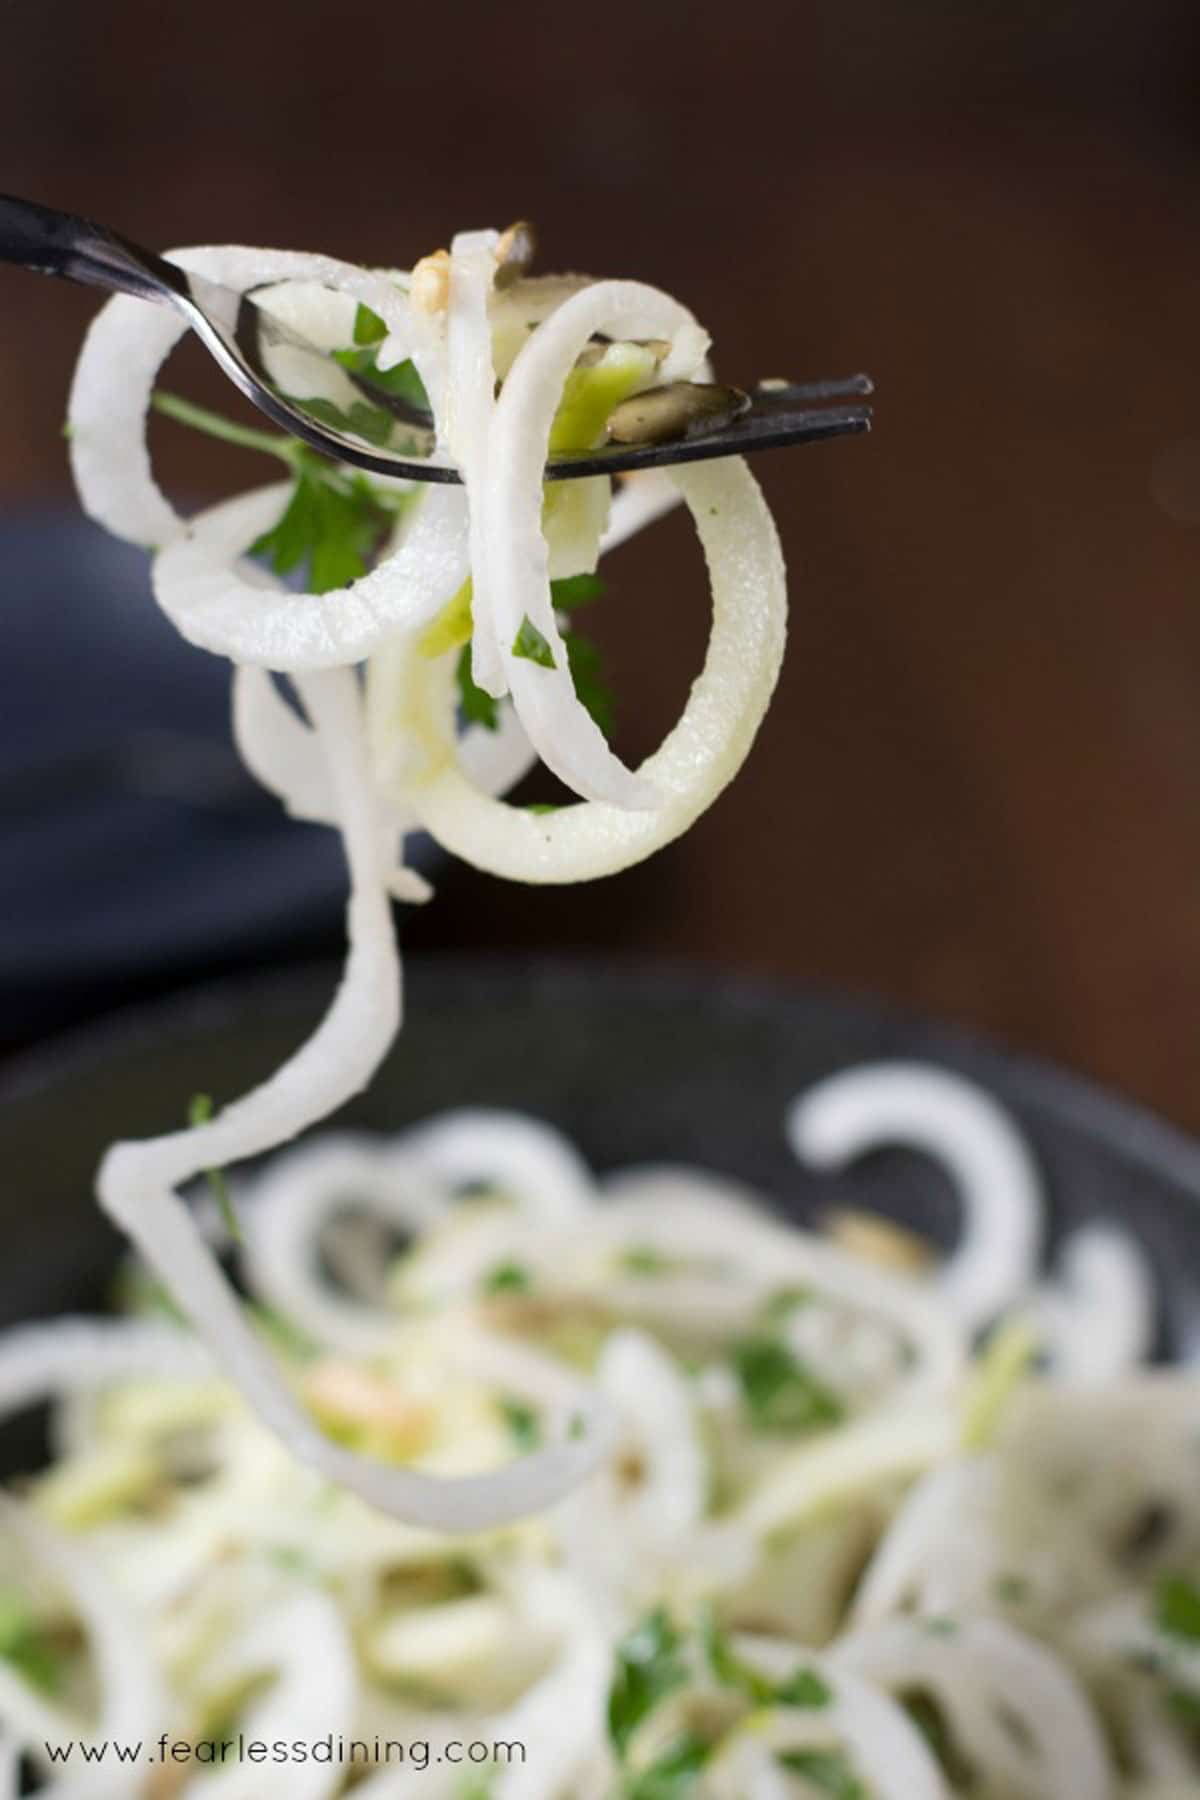 A fork full of daikon salad spirals.